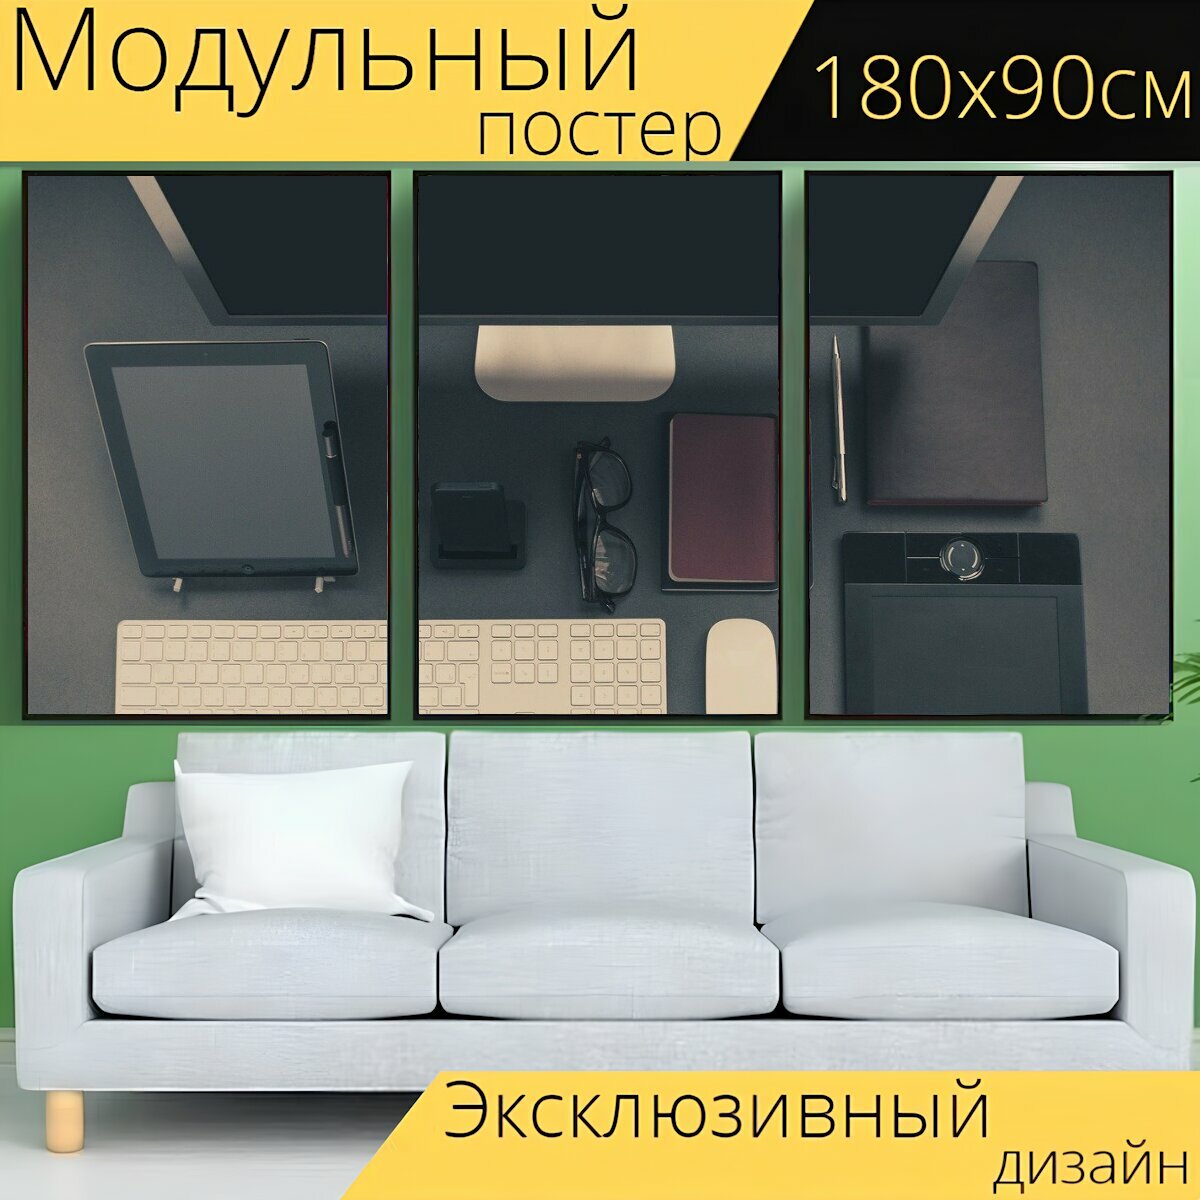 Модульный постер "Компьютер, аксессуары, монитор" 180 x 90 см. для интерьера